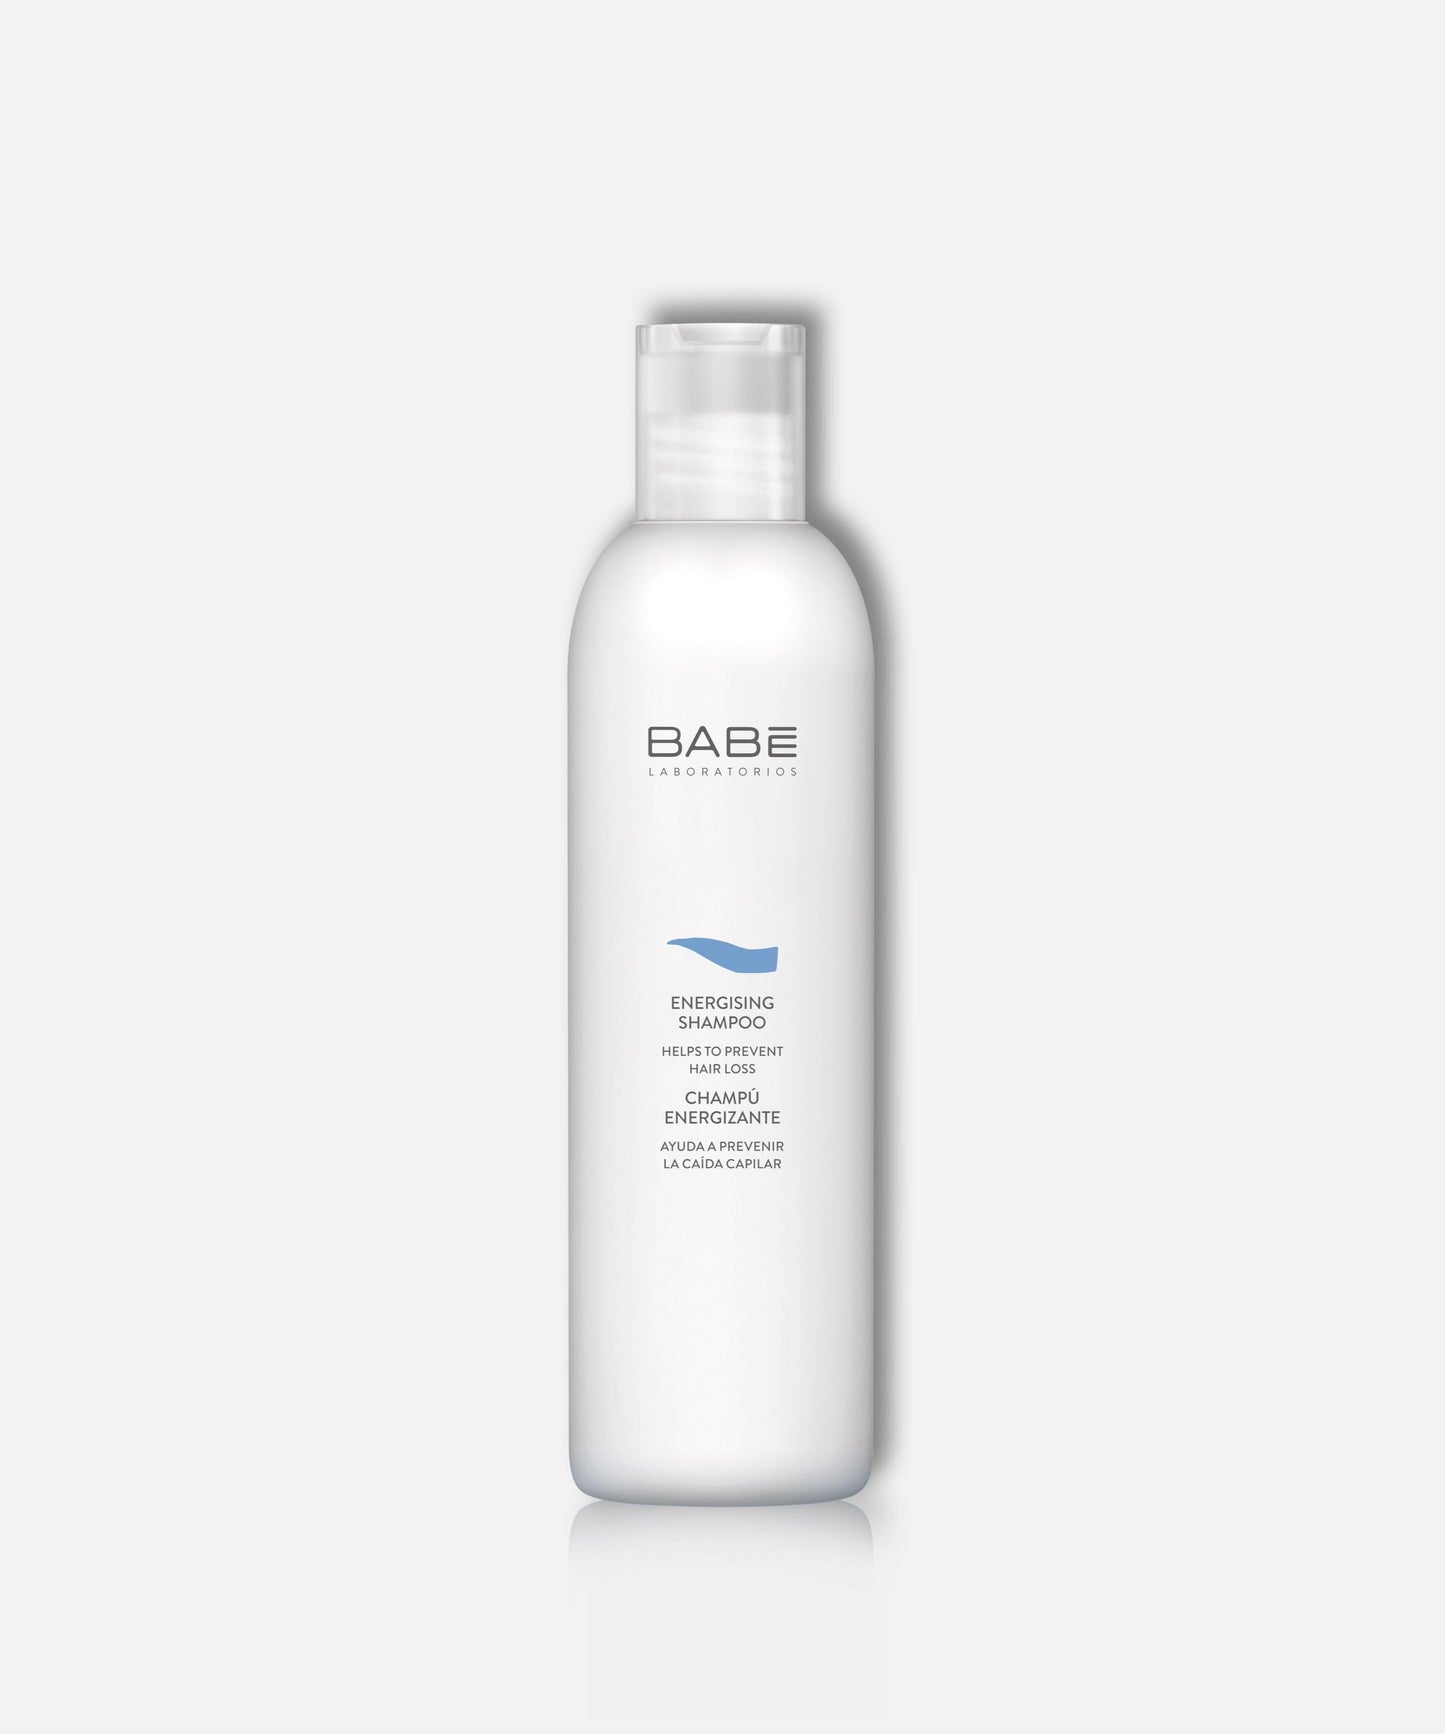 Babe Energizing Shampoo, 250ml